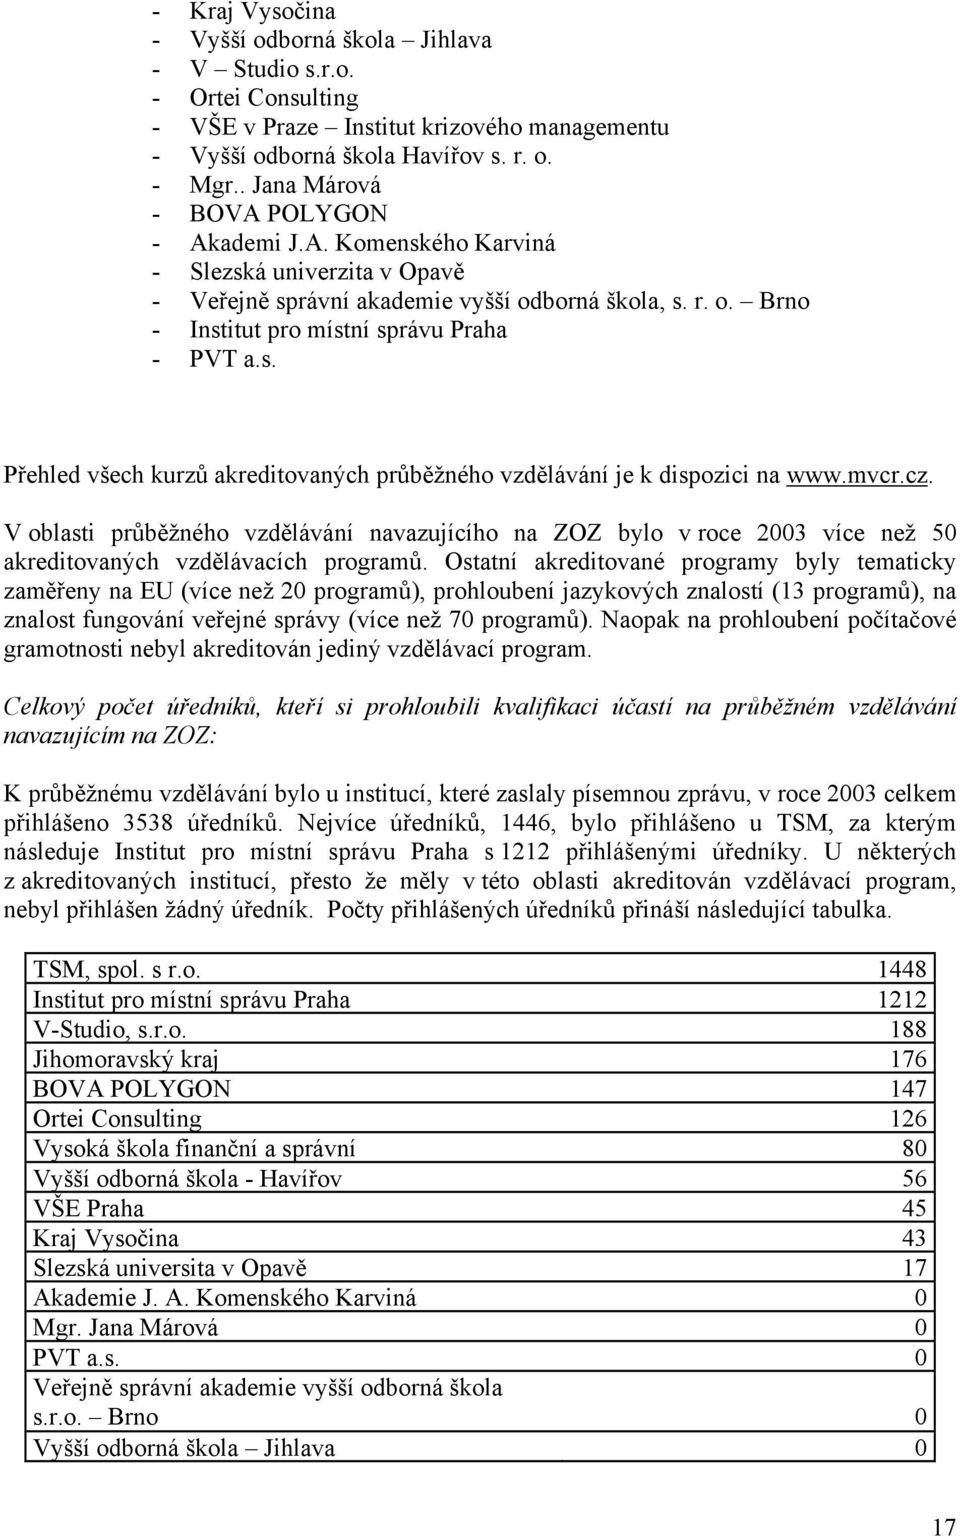 mvcr.cz. V oblasti průběžného vzdělávání navazujícího na ZOZ bylo v roce 003 více než 50 akreditovaných vzdělávacích programů.